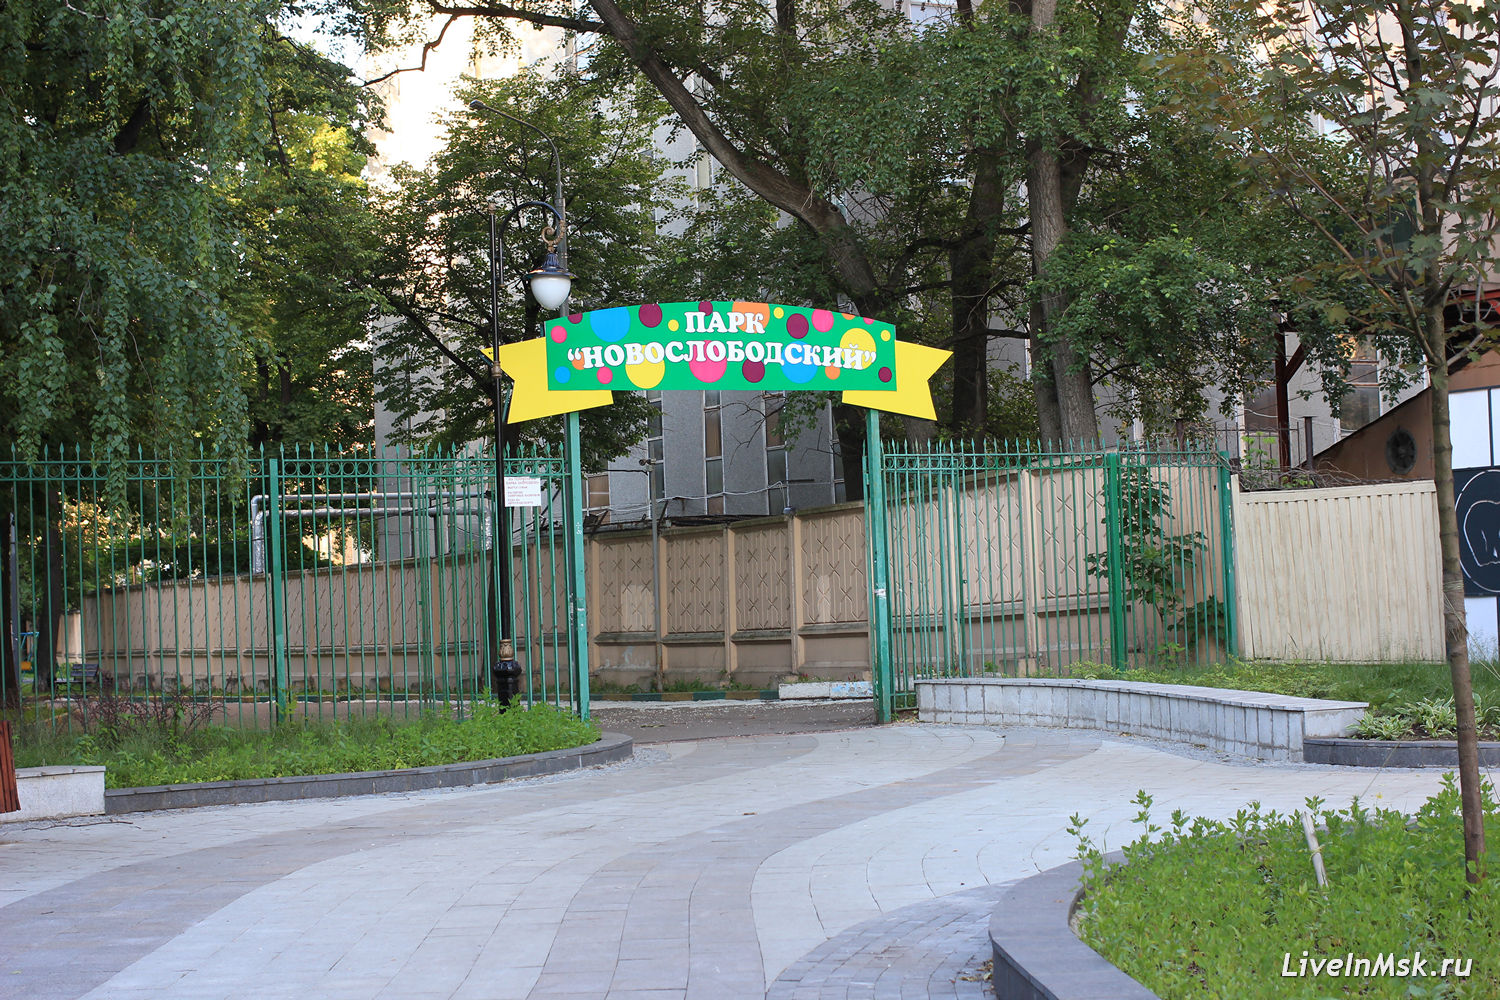 Новослободский парк, фото 2017 года